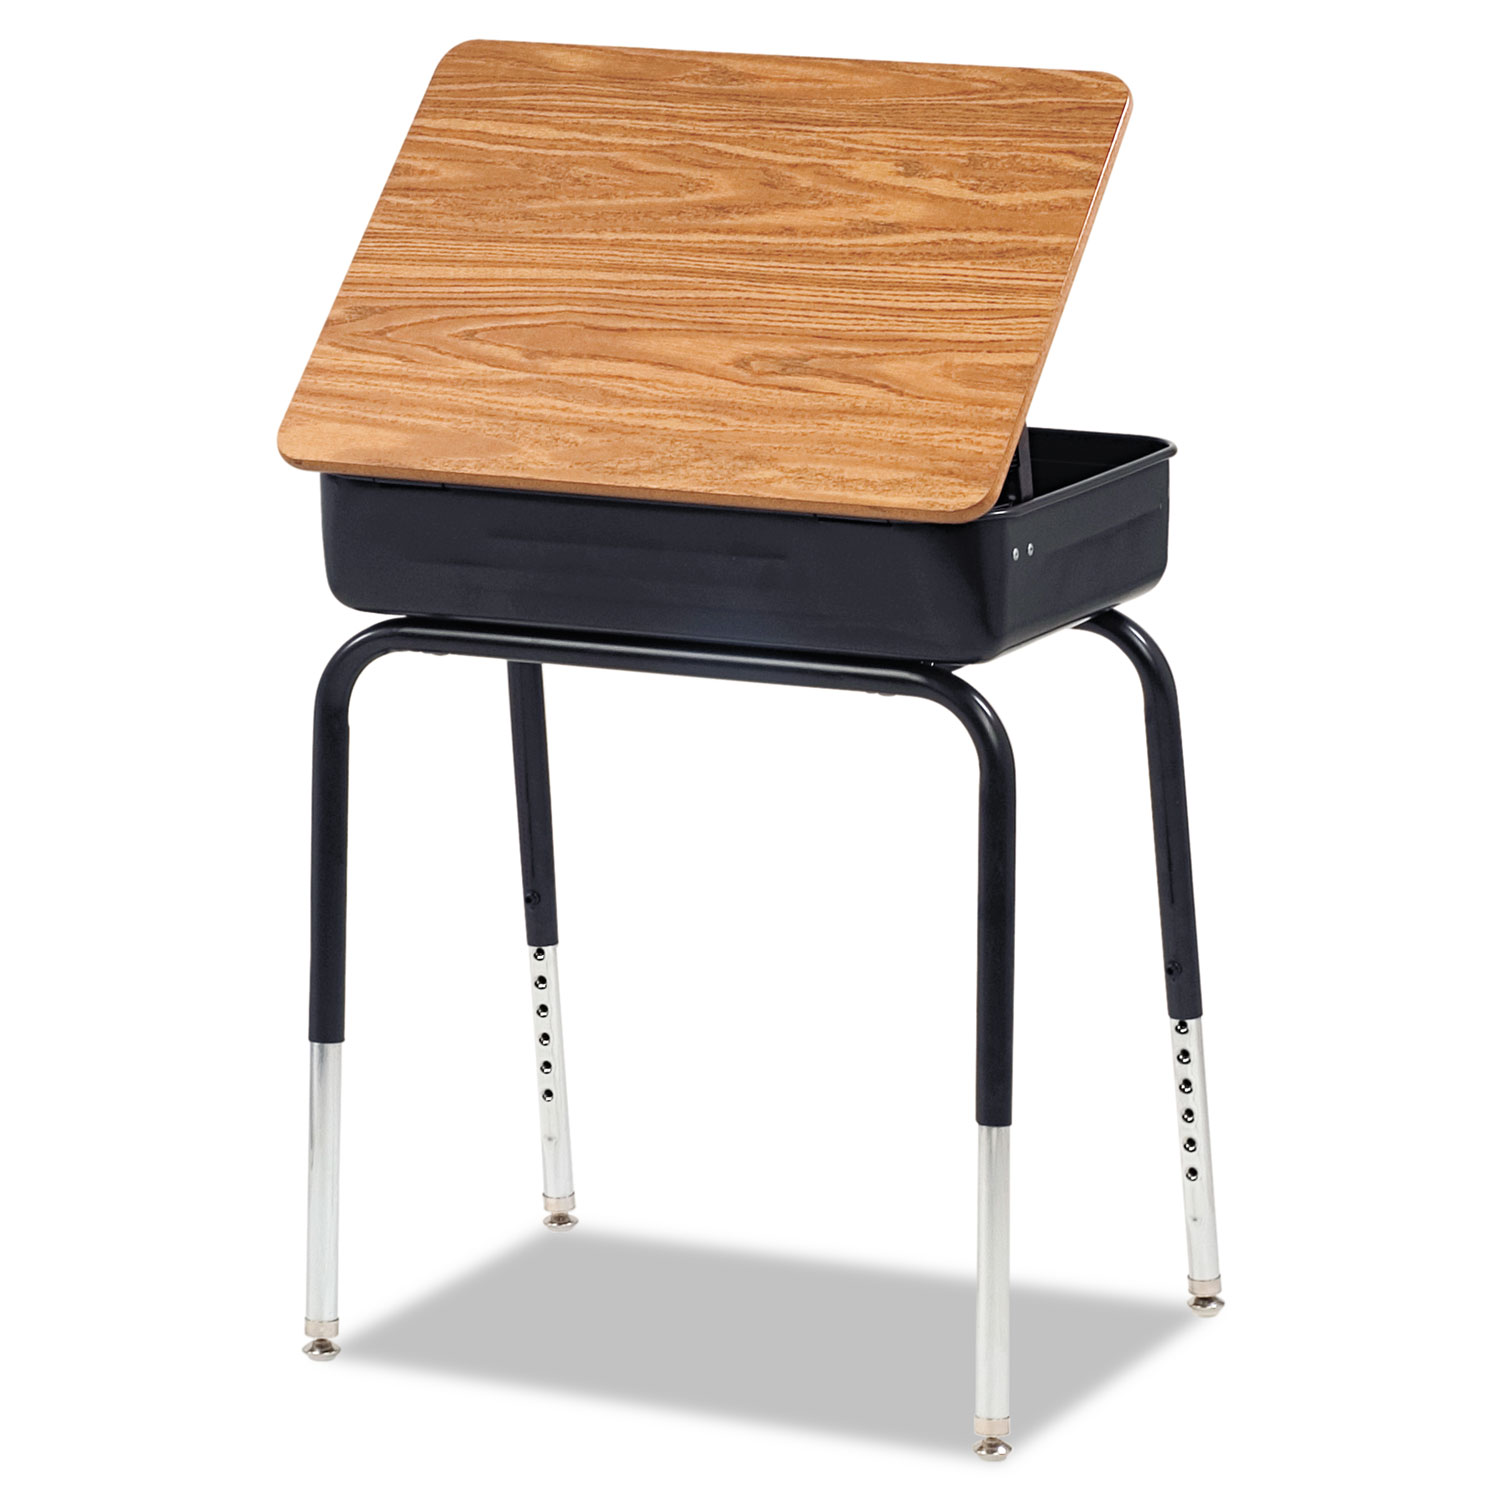 Lift-Lid Student Desk, 24w x 18d x 30h, Medium Oak, 2/Carton